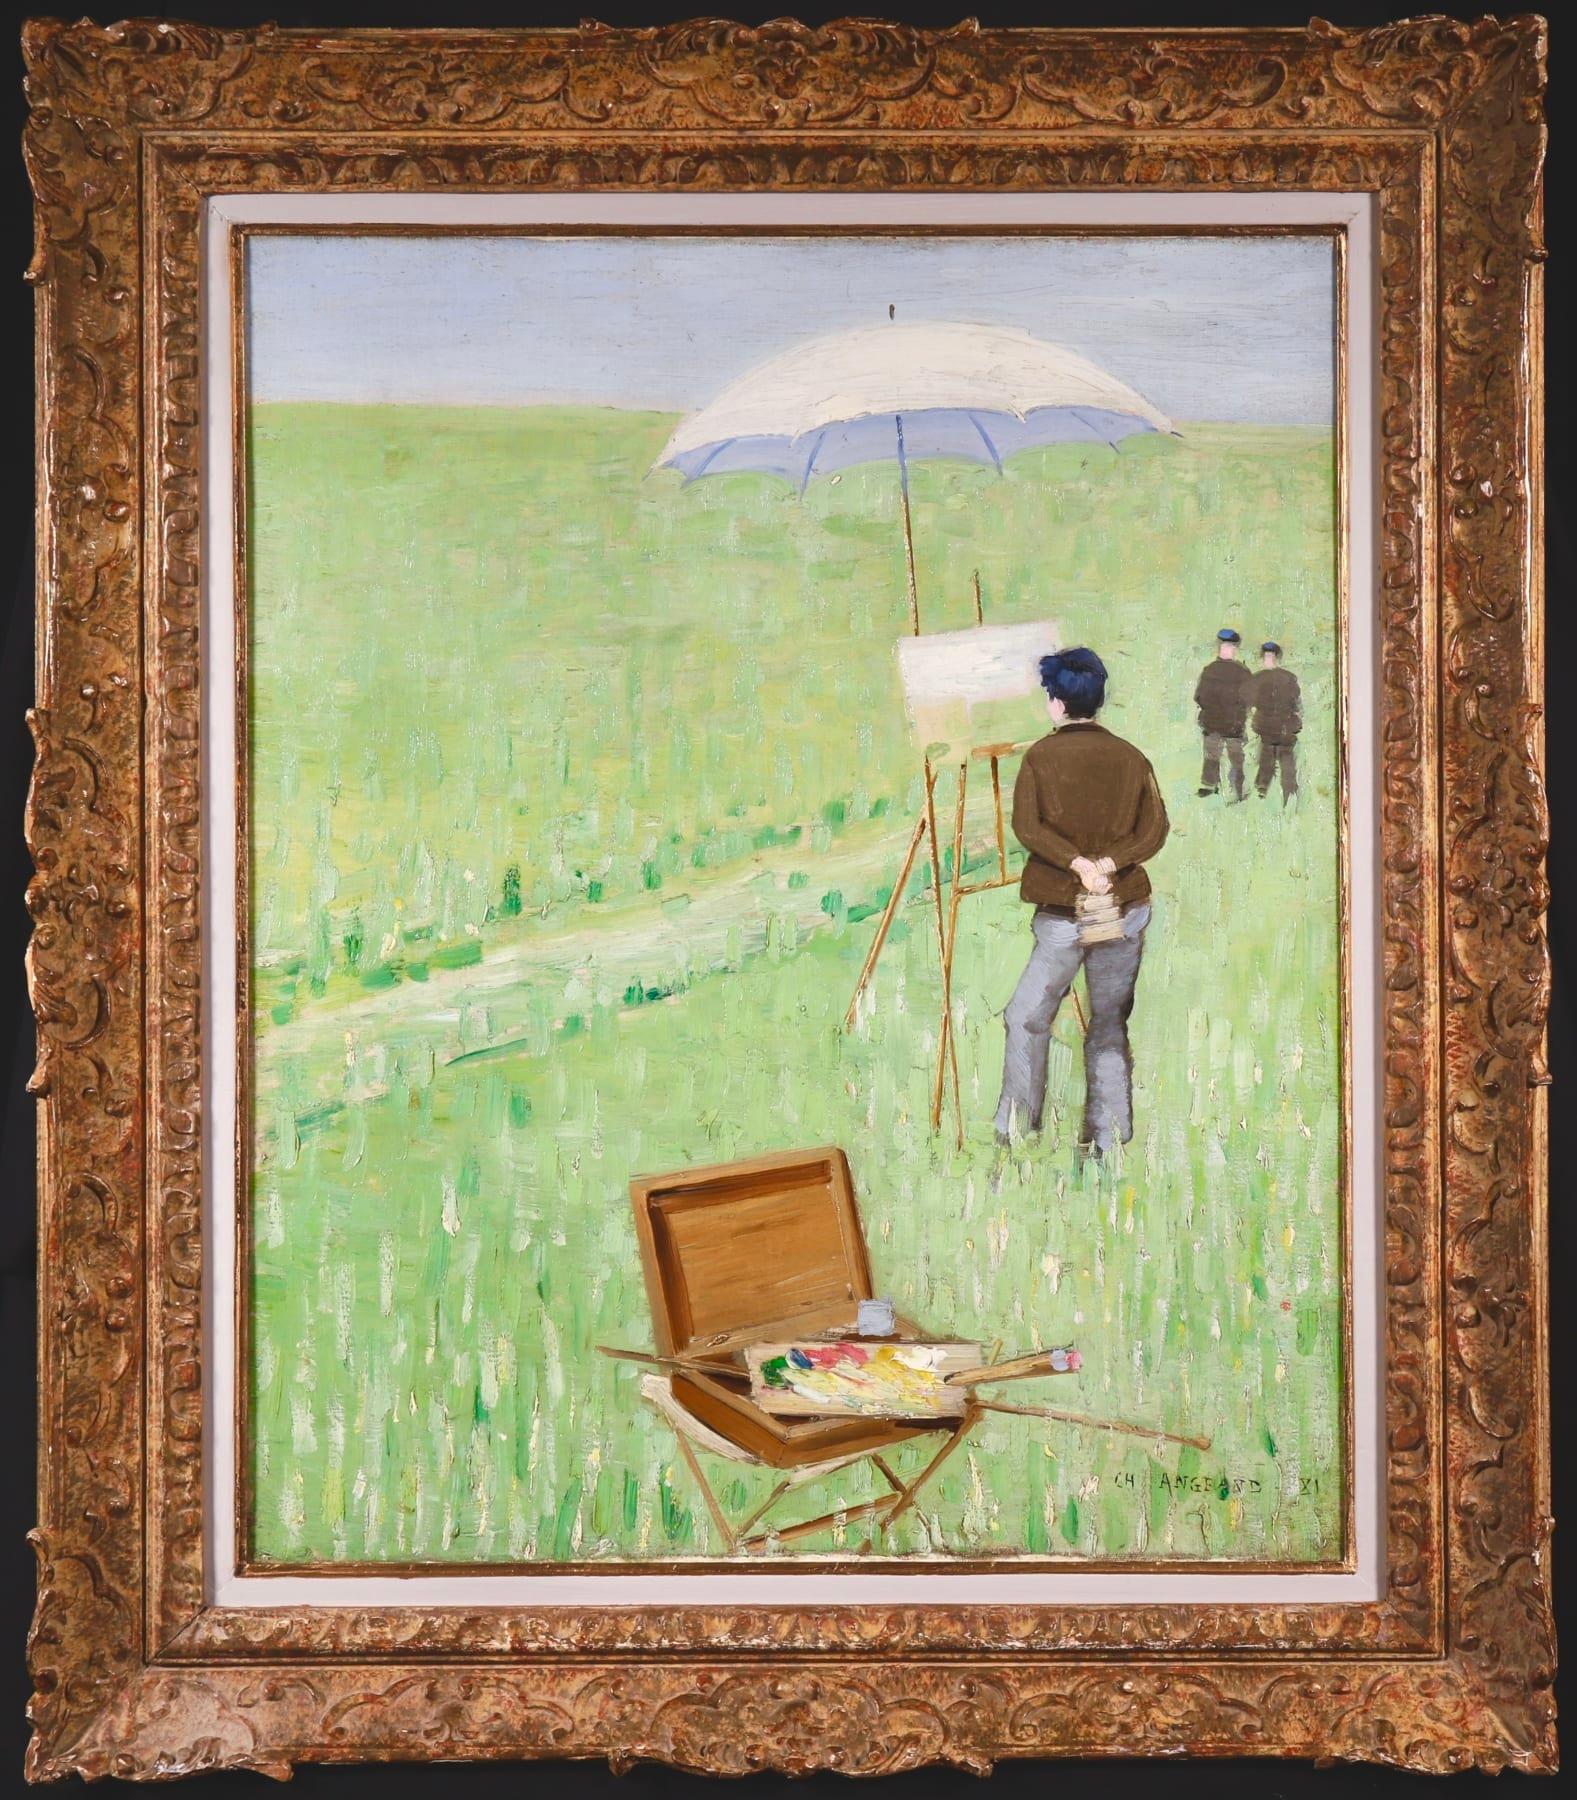 Signiertes und datiertes Öl auf Leinwand des französischen impressionistischen Malers Charles Theophile Angrand. Dieses wunderbare und großformatige Werk zeigt einen Künstler, der "en plain air" auf einer schönen grünen Wiese mit blauem Himmel malt,